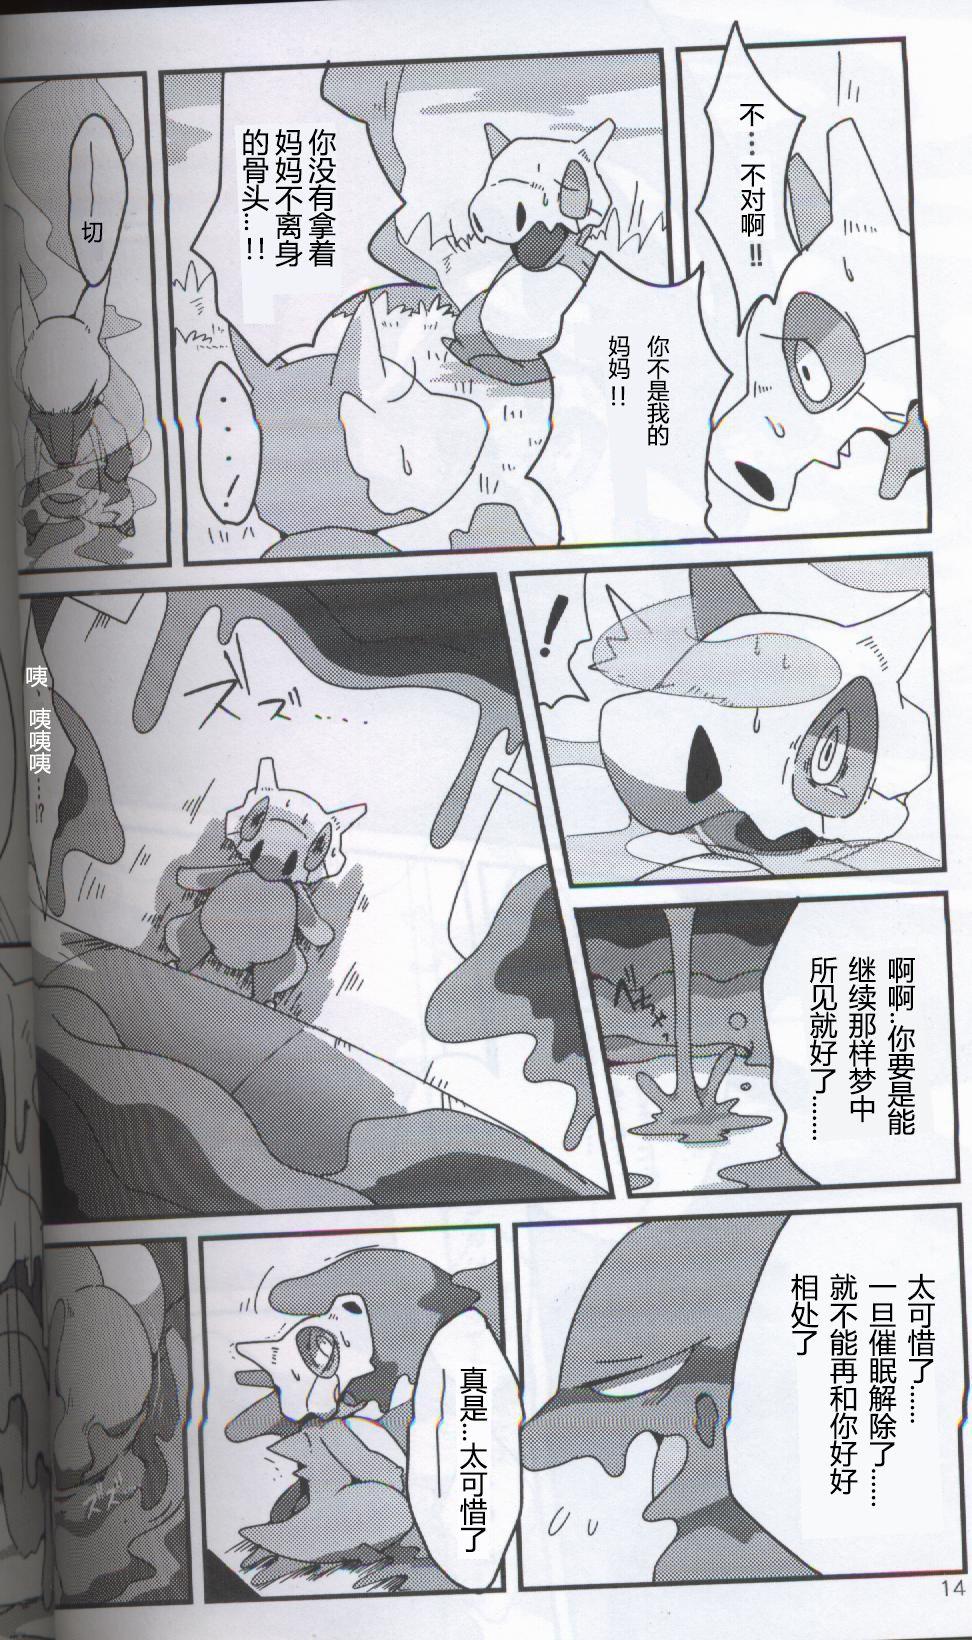 Blowjob TEARDROPS - Pokemon Little - Page 9